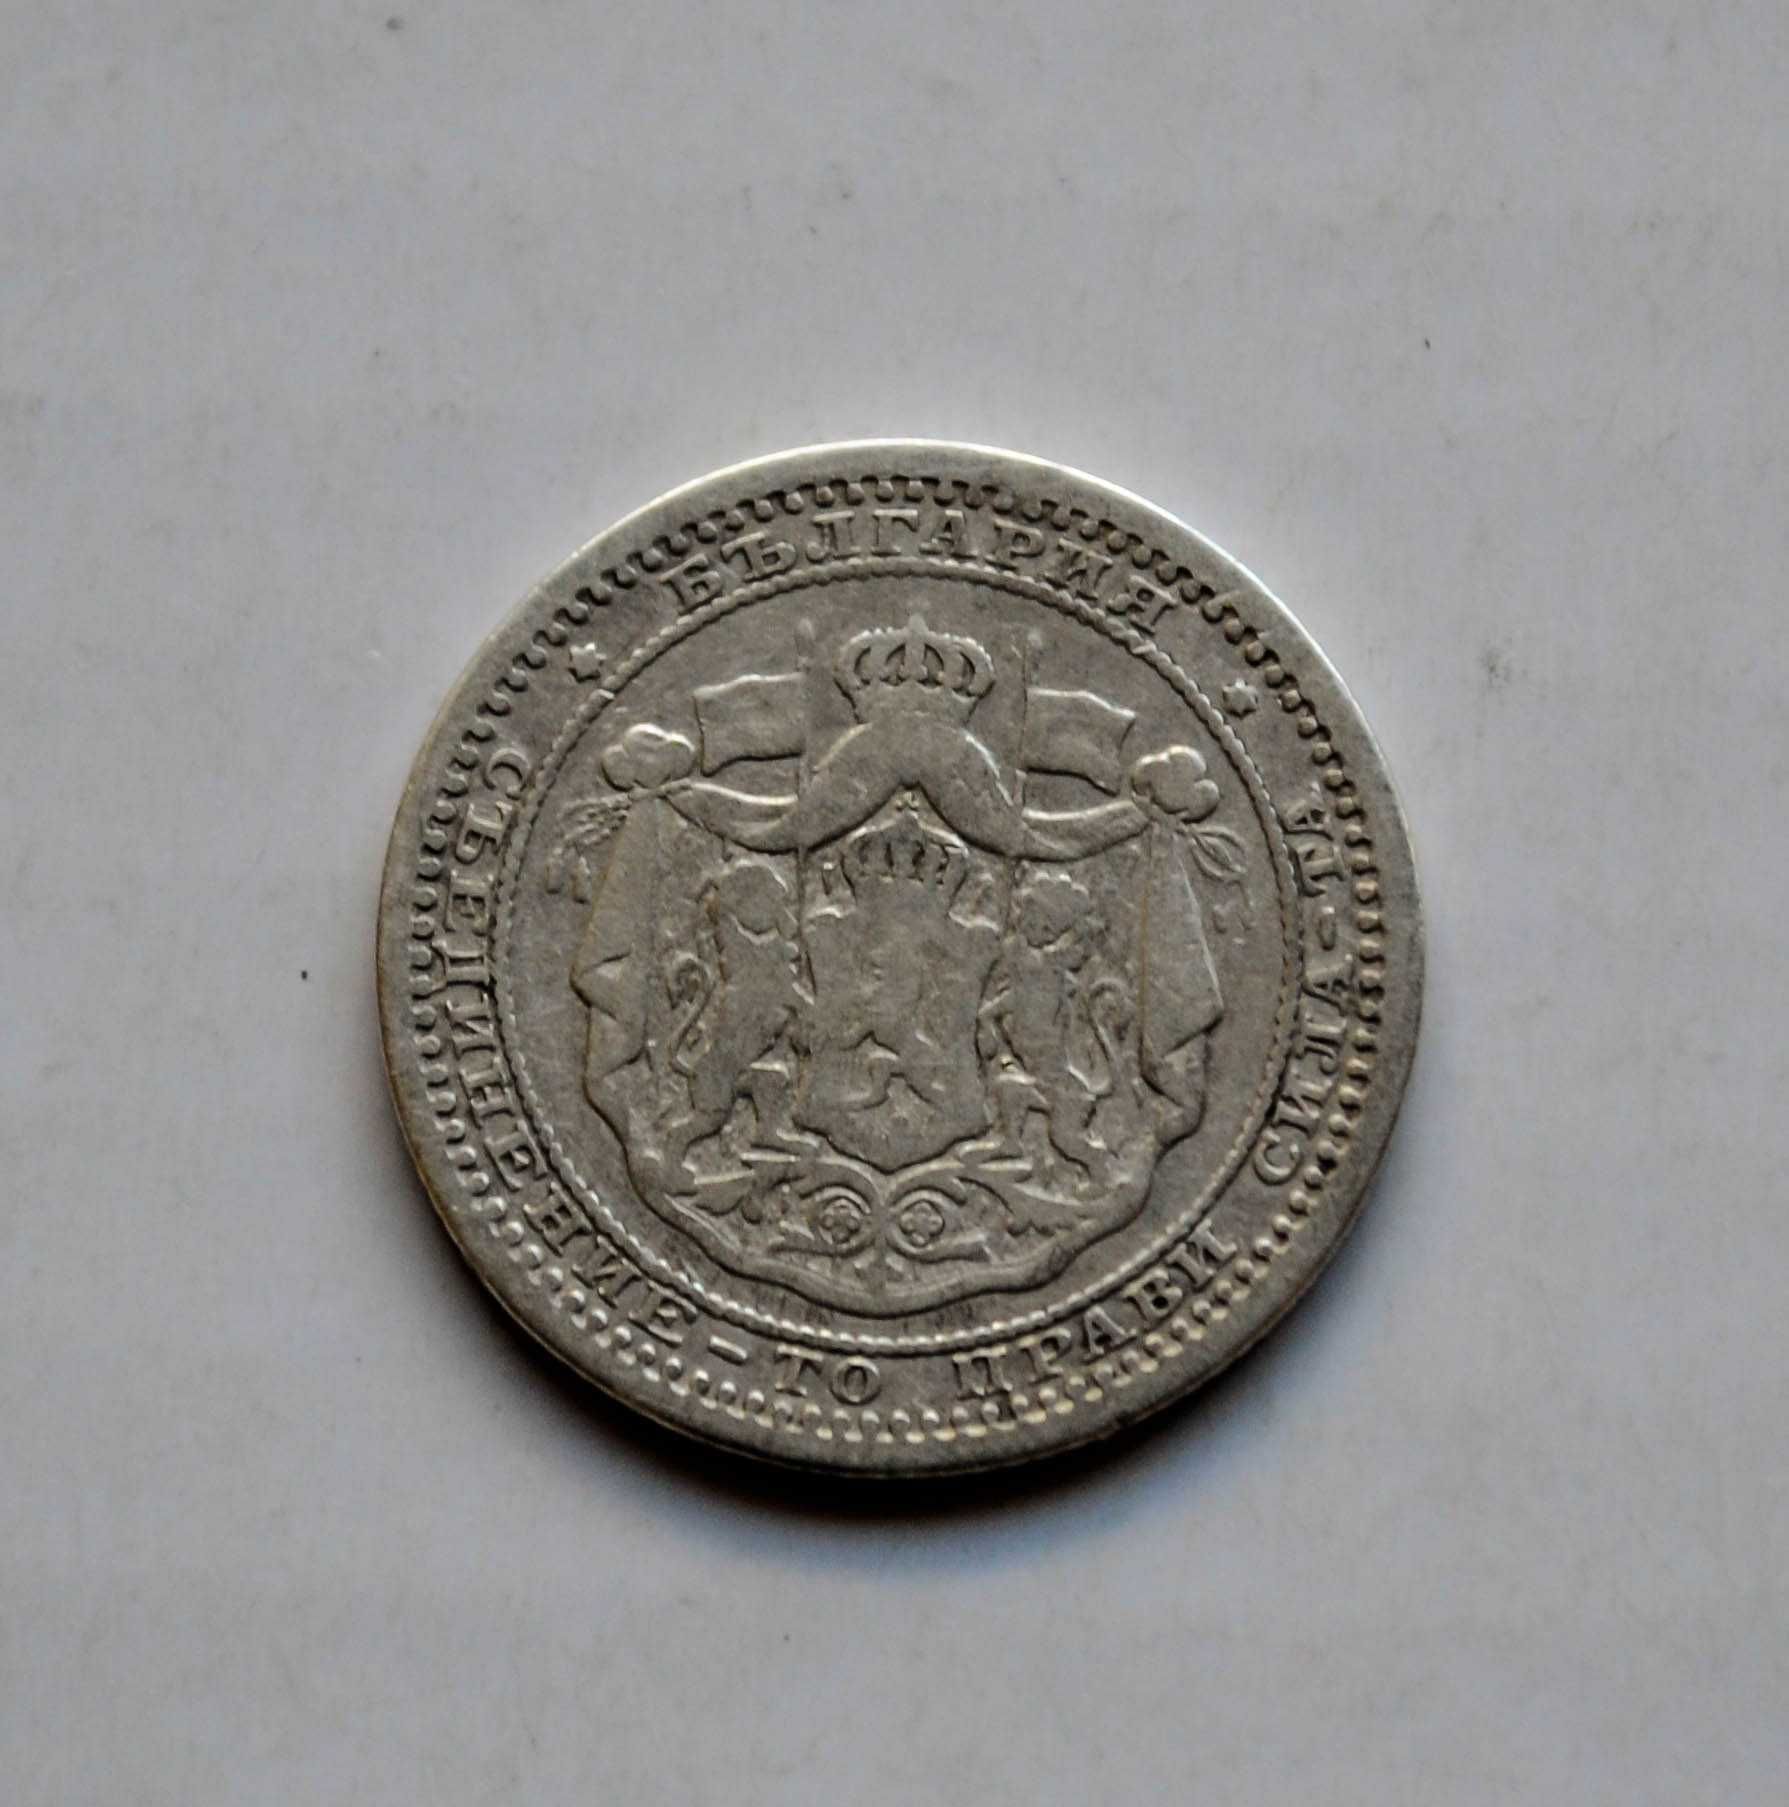 50 стотинки от 1883 година сребро